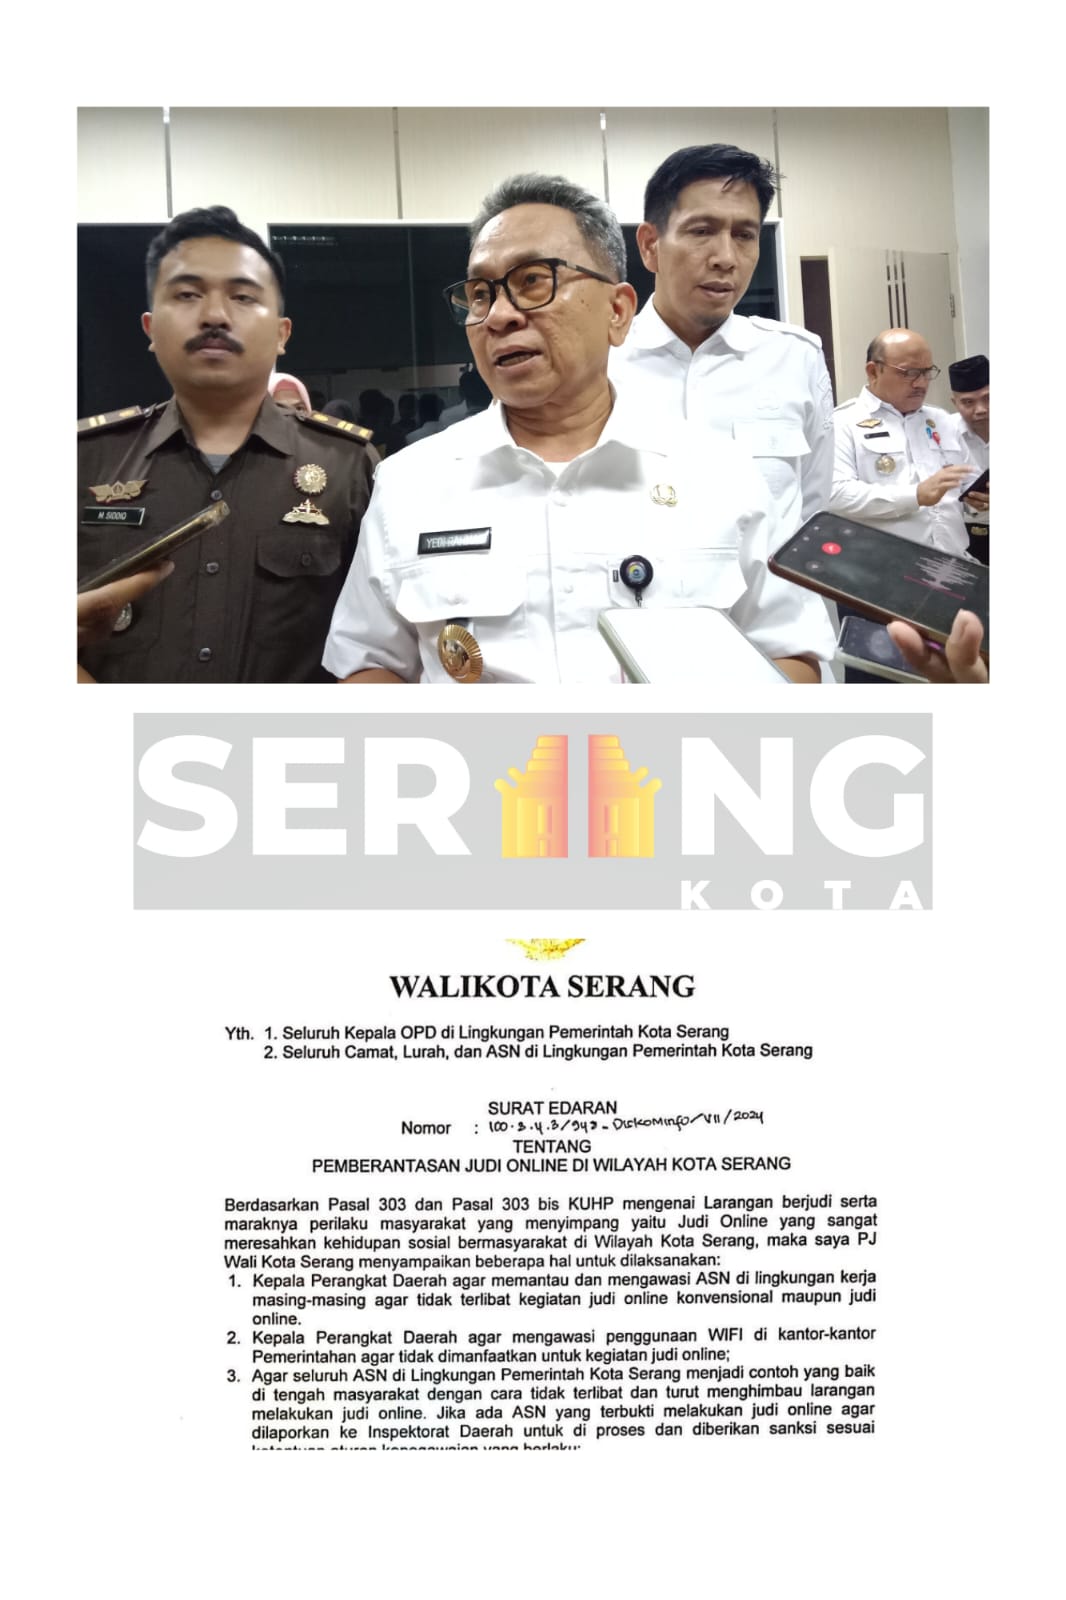 Maraknya Judol, Pj Walikota Serang beri surat edaran ke jajarannya.